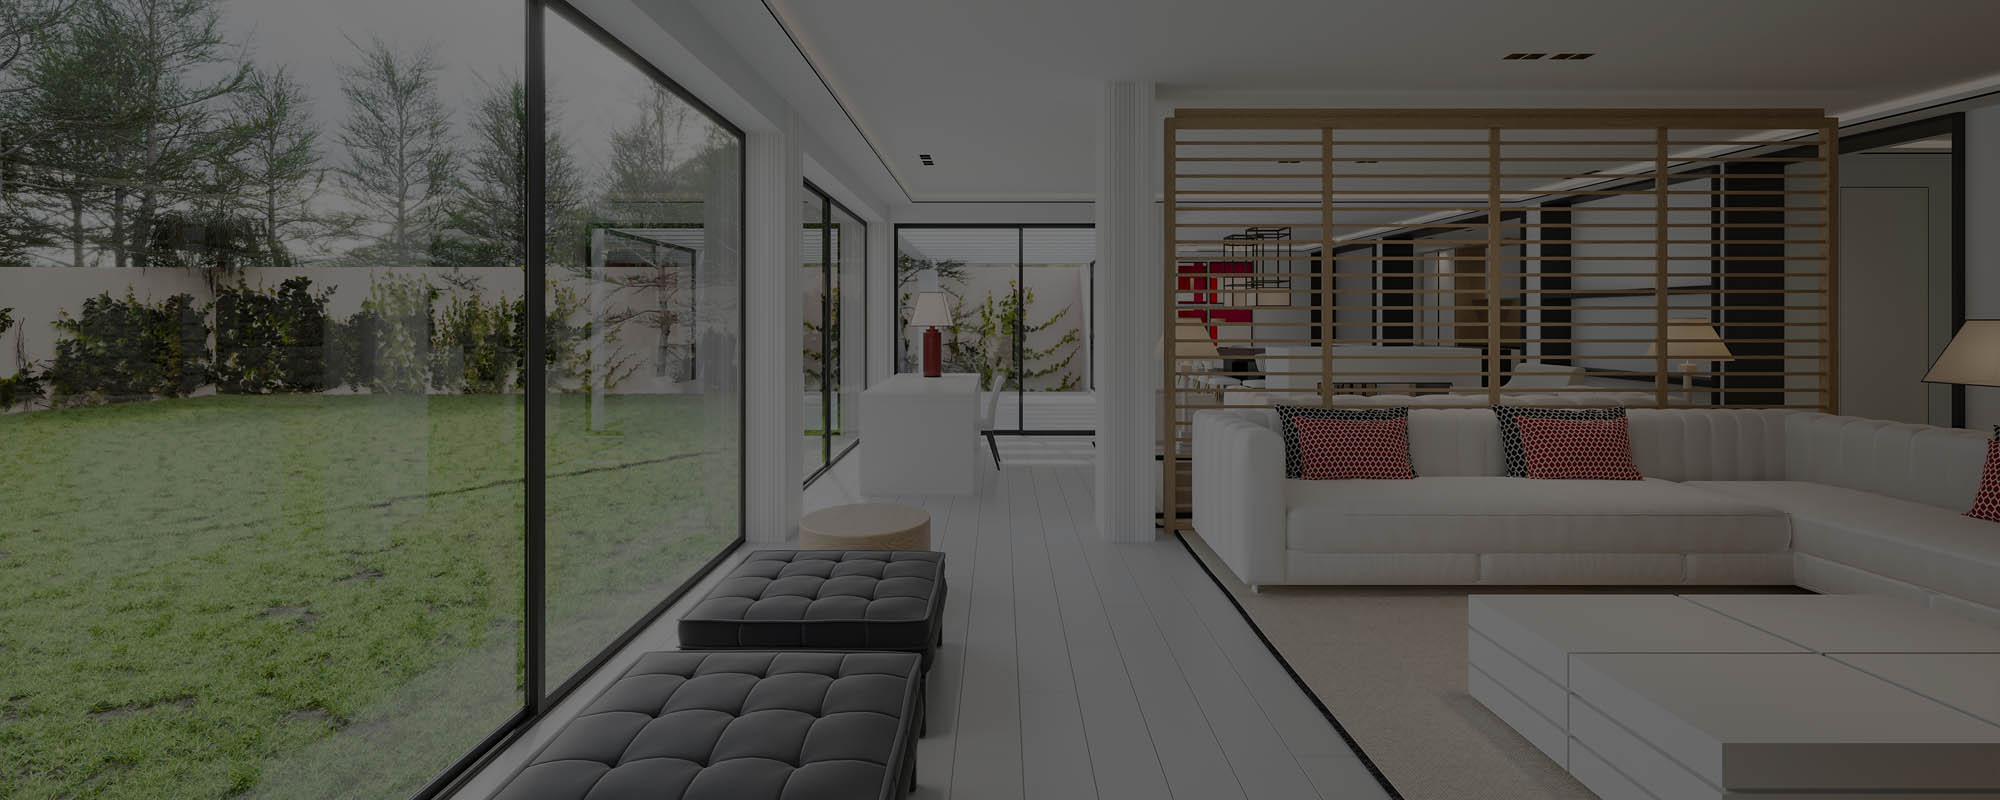 Renders 3D de un proyecto de interiorismo en una vivienda de lujo